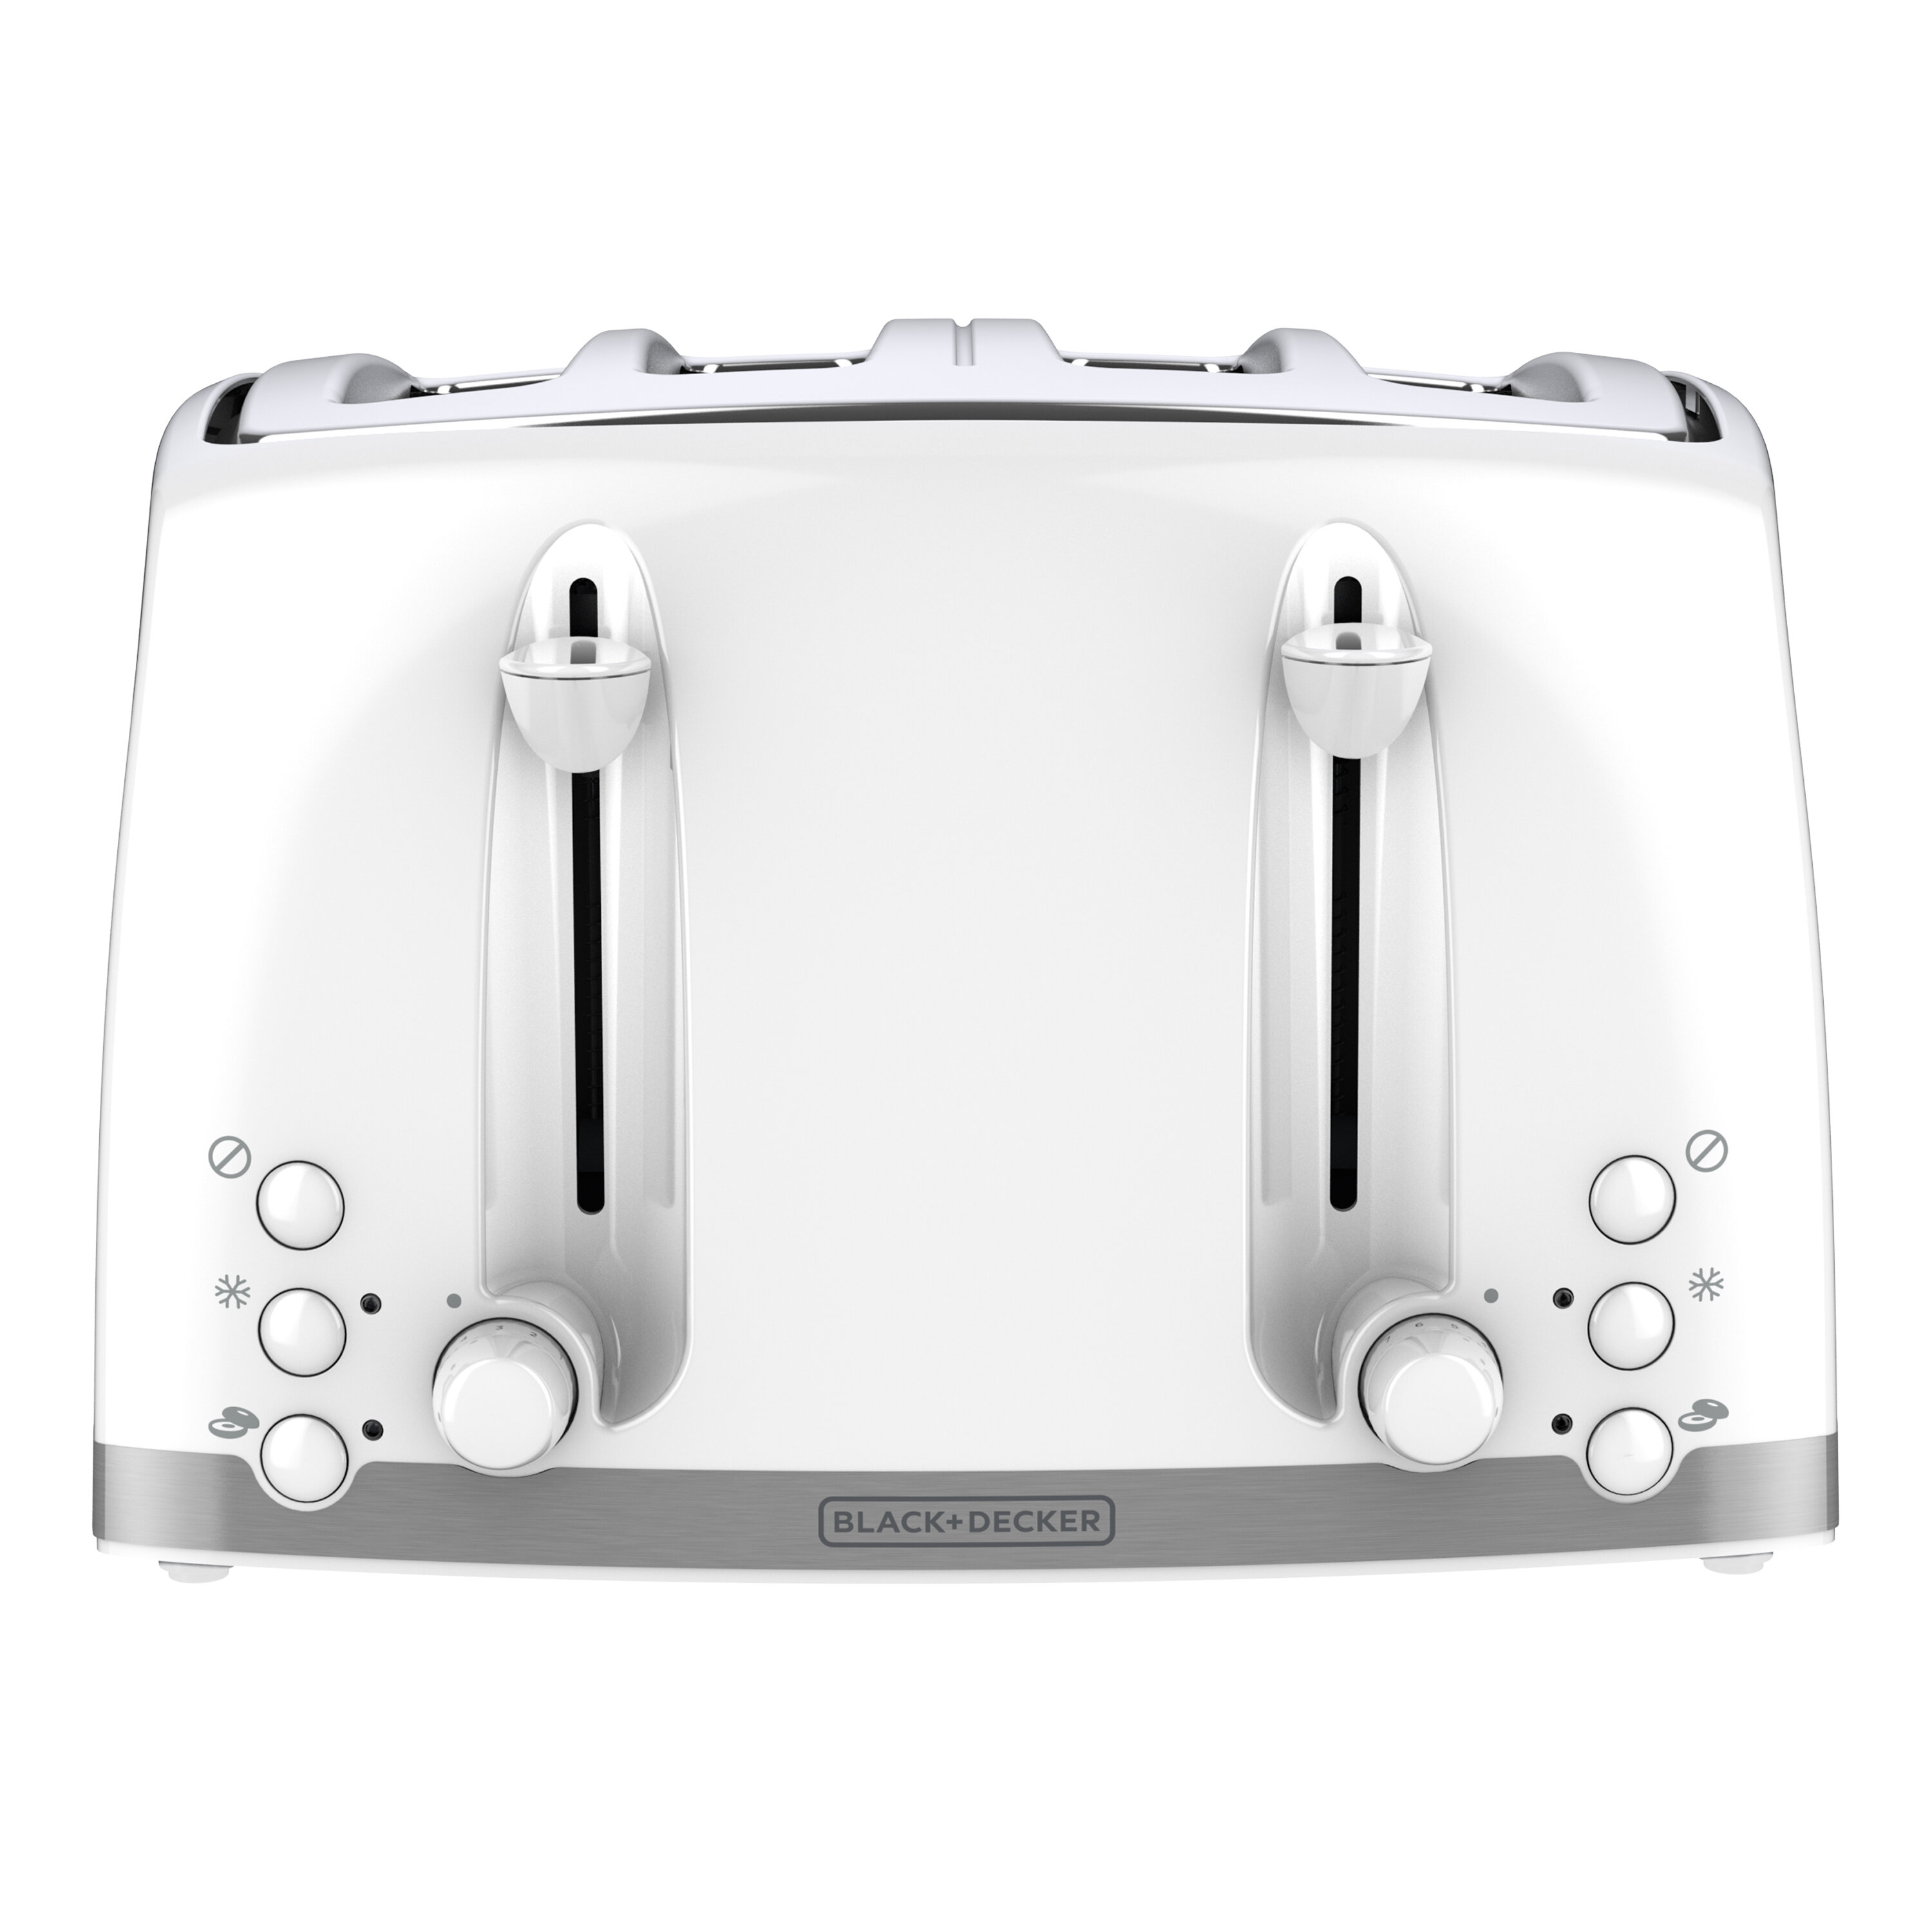 https://assets.wfcdn.com/im/17112138/compr-r85/1609/160922514/bd-honeycomb-toaster-4-slice-white.jpg